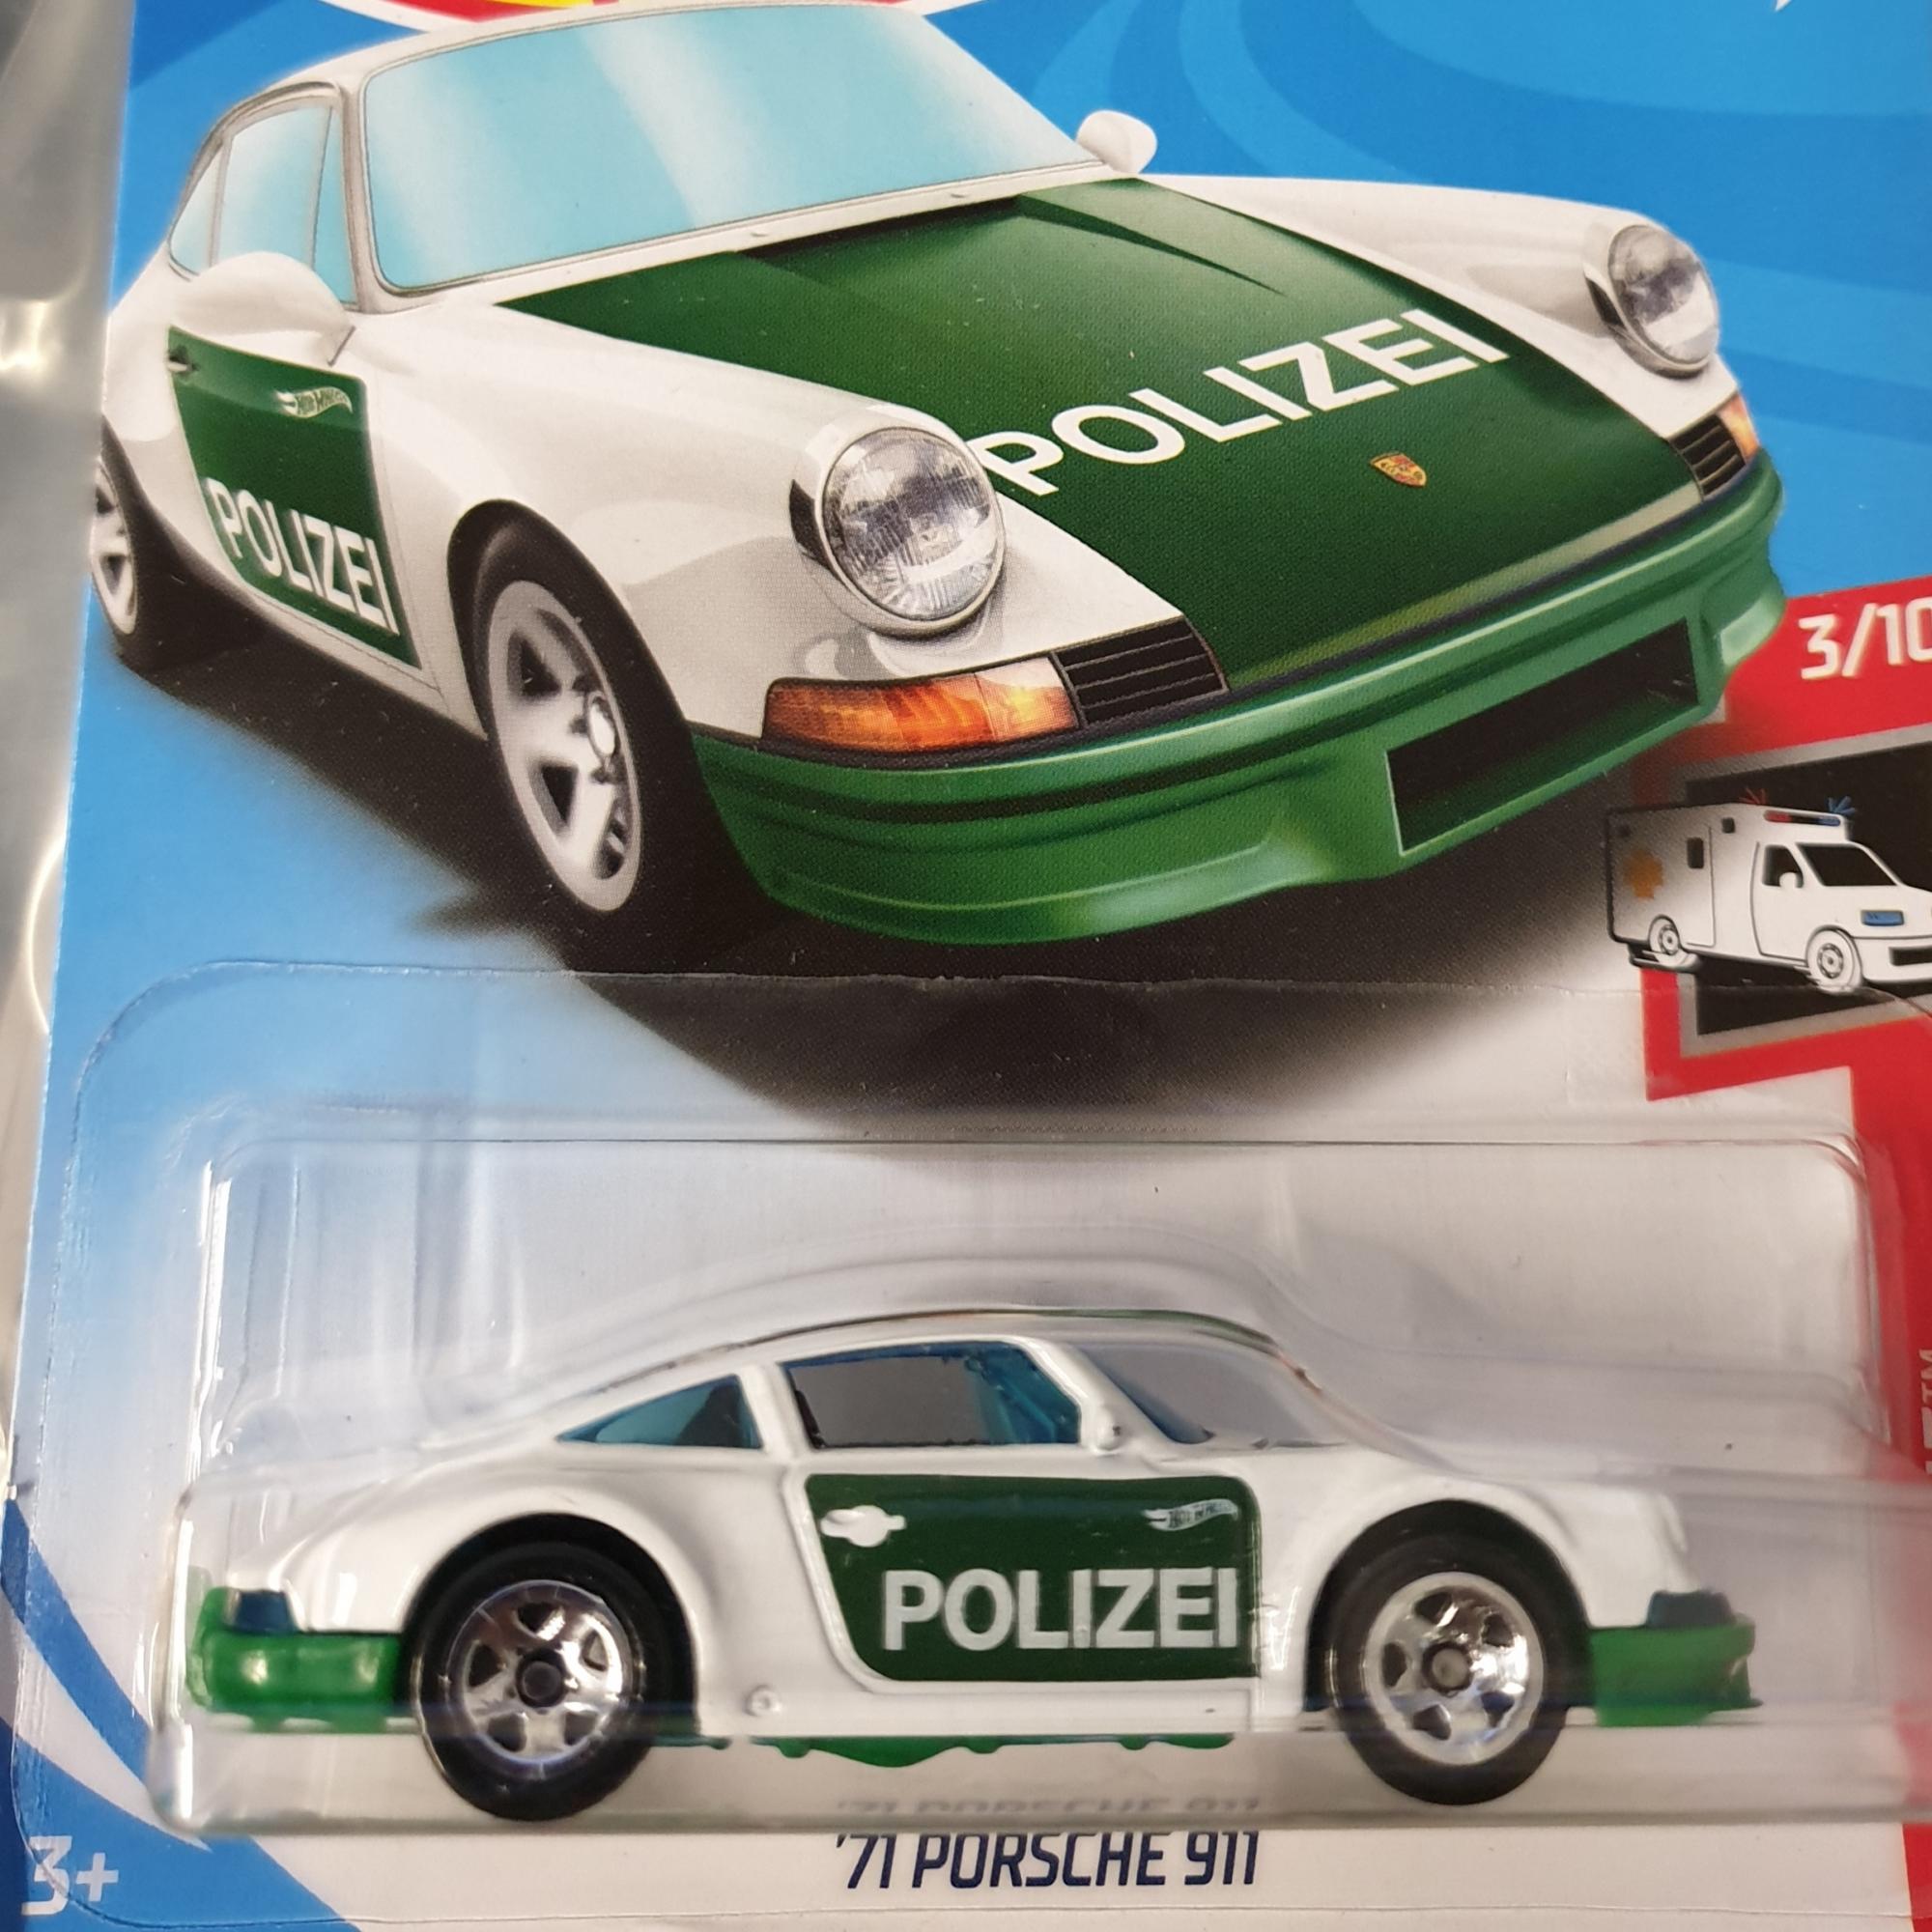 '71 Porsche 911 Polizei Hot Wheels 1:64. 